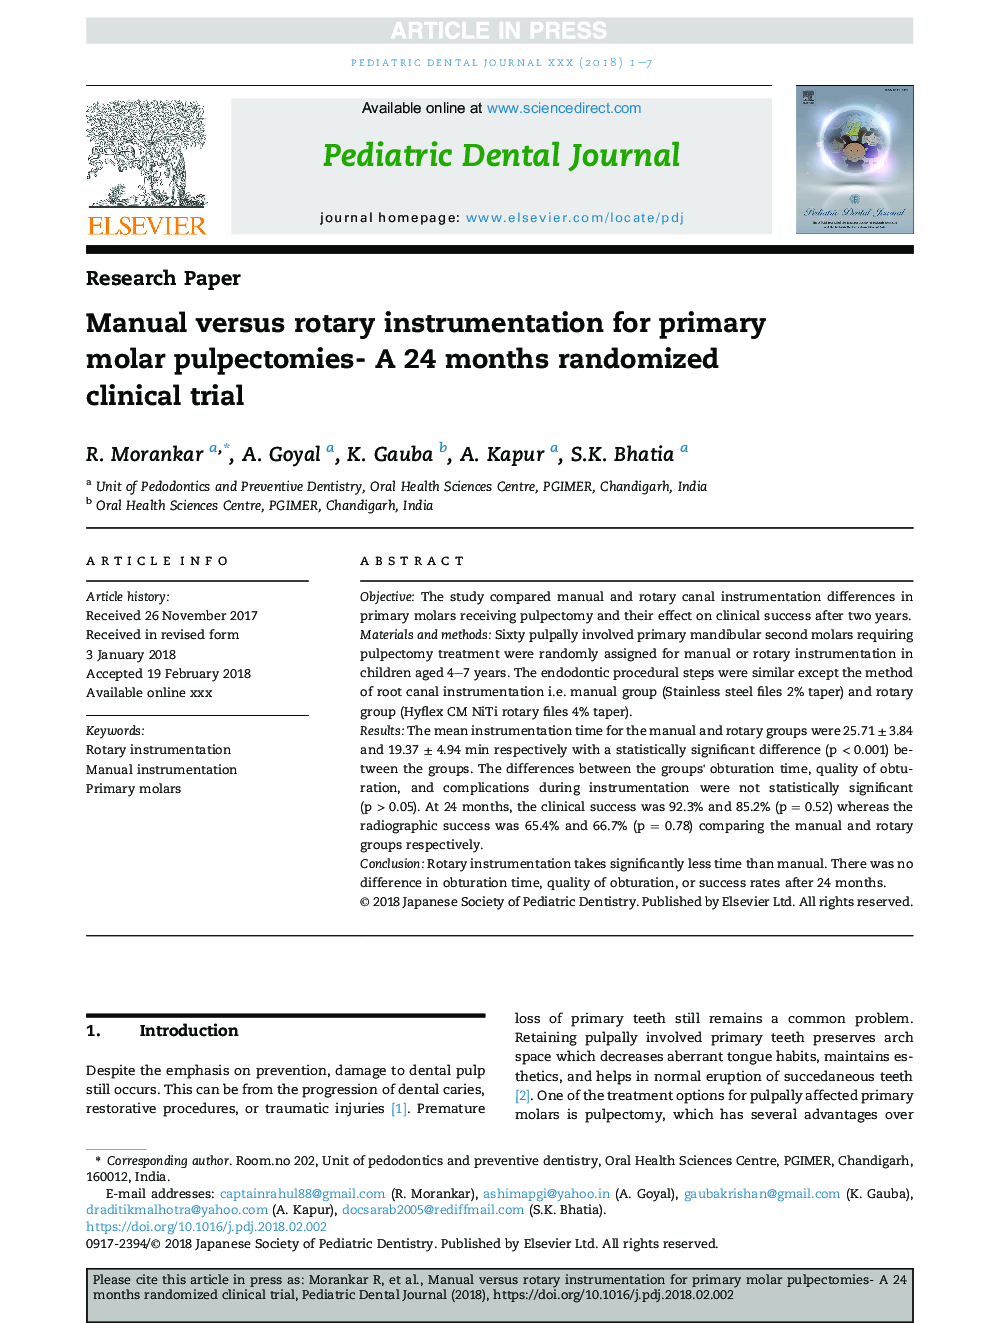 ابزارهای دستی و روتاری برای پالپومومی مولر اول - یک کارآزمایی بالینی تصادفی 24 ماهه است 